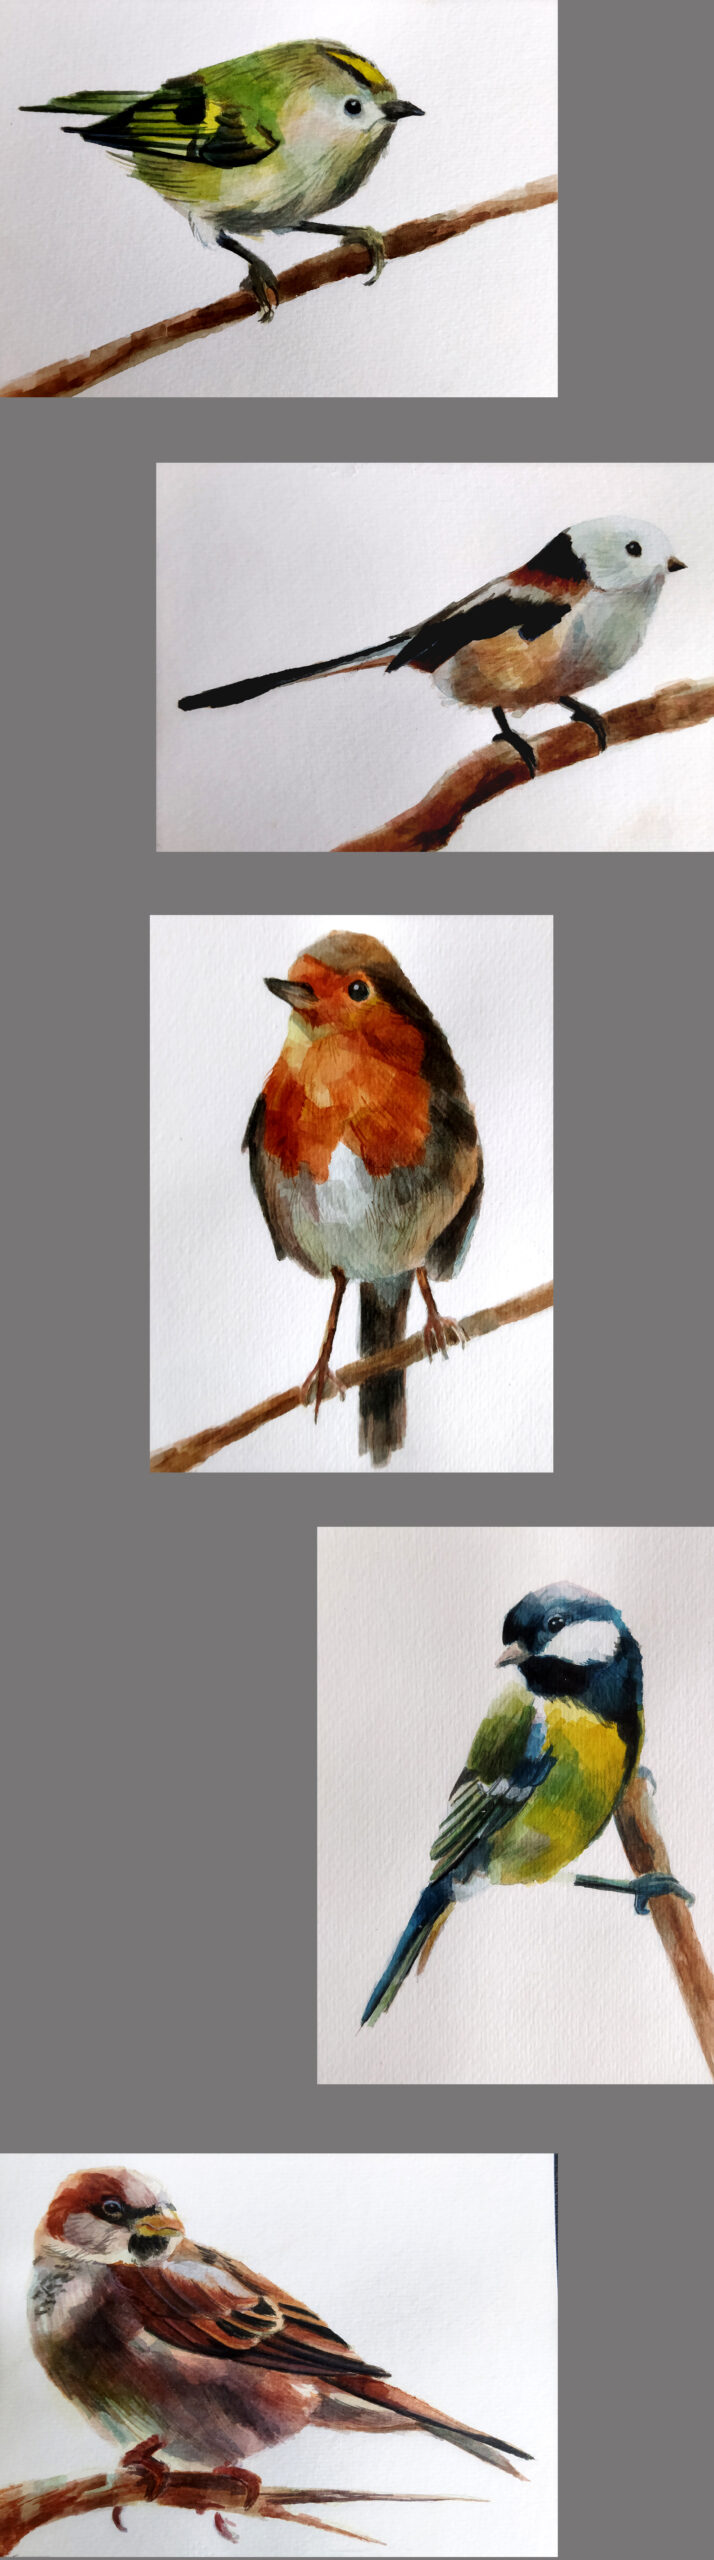 Szkice malarskie pięciu  różnych ptaków.